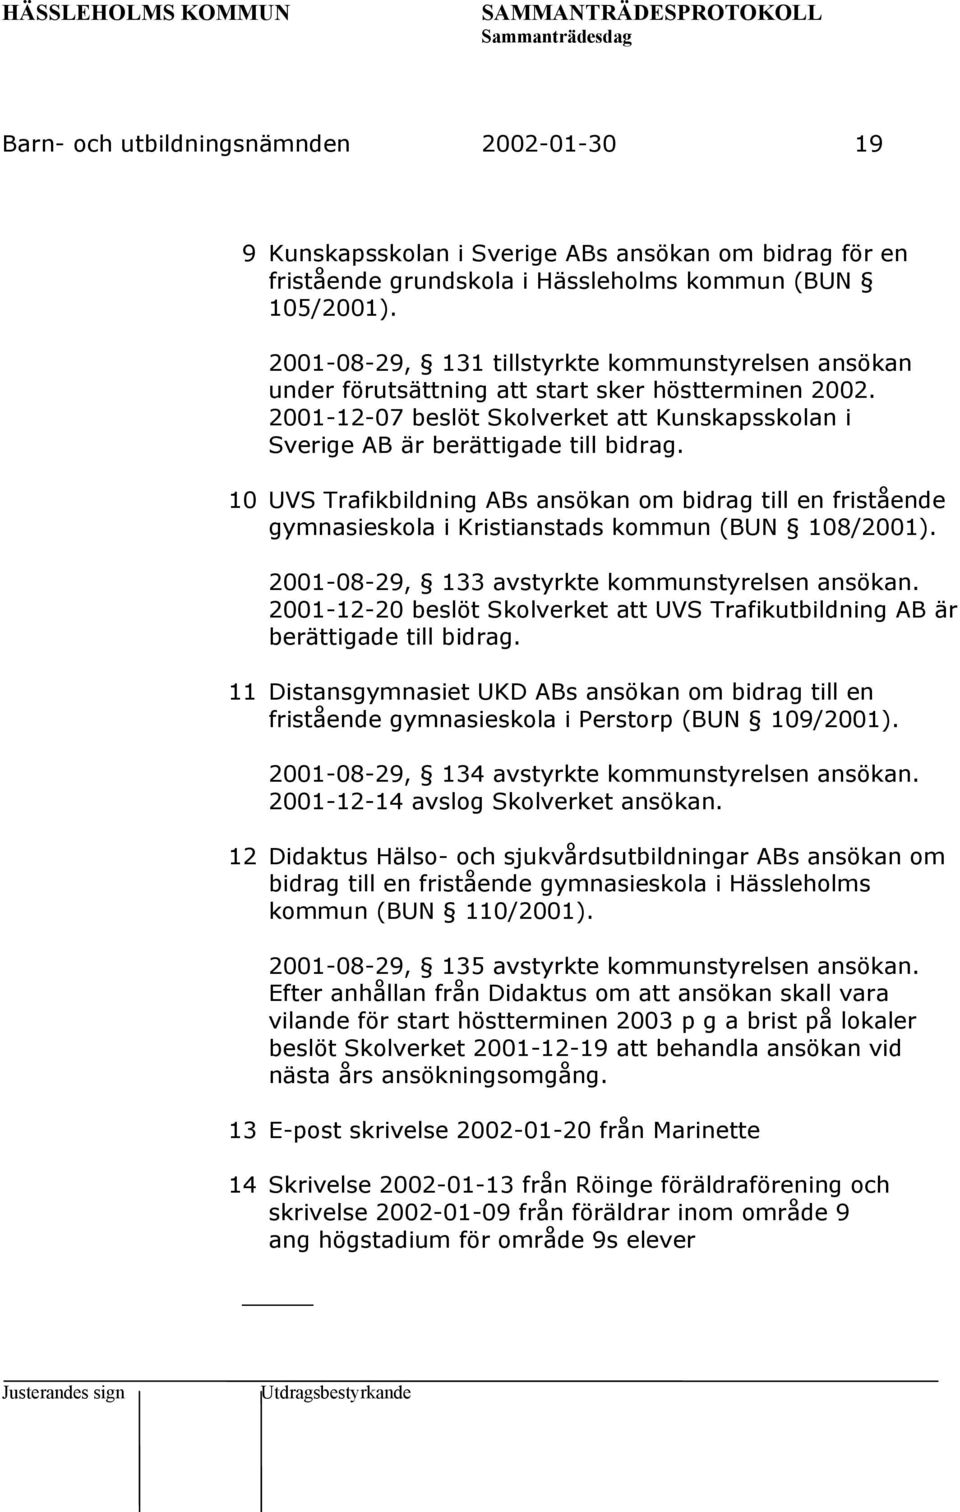 10 UVS Trafikbildning ABs ansökan om bidrag till en fristående gymnasieskola i Kristianstads kommun (BUN 108/2001). 2001-08-29, 133 avstyrkte kommunstyrelsen ansökan.